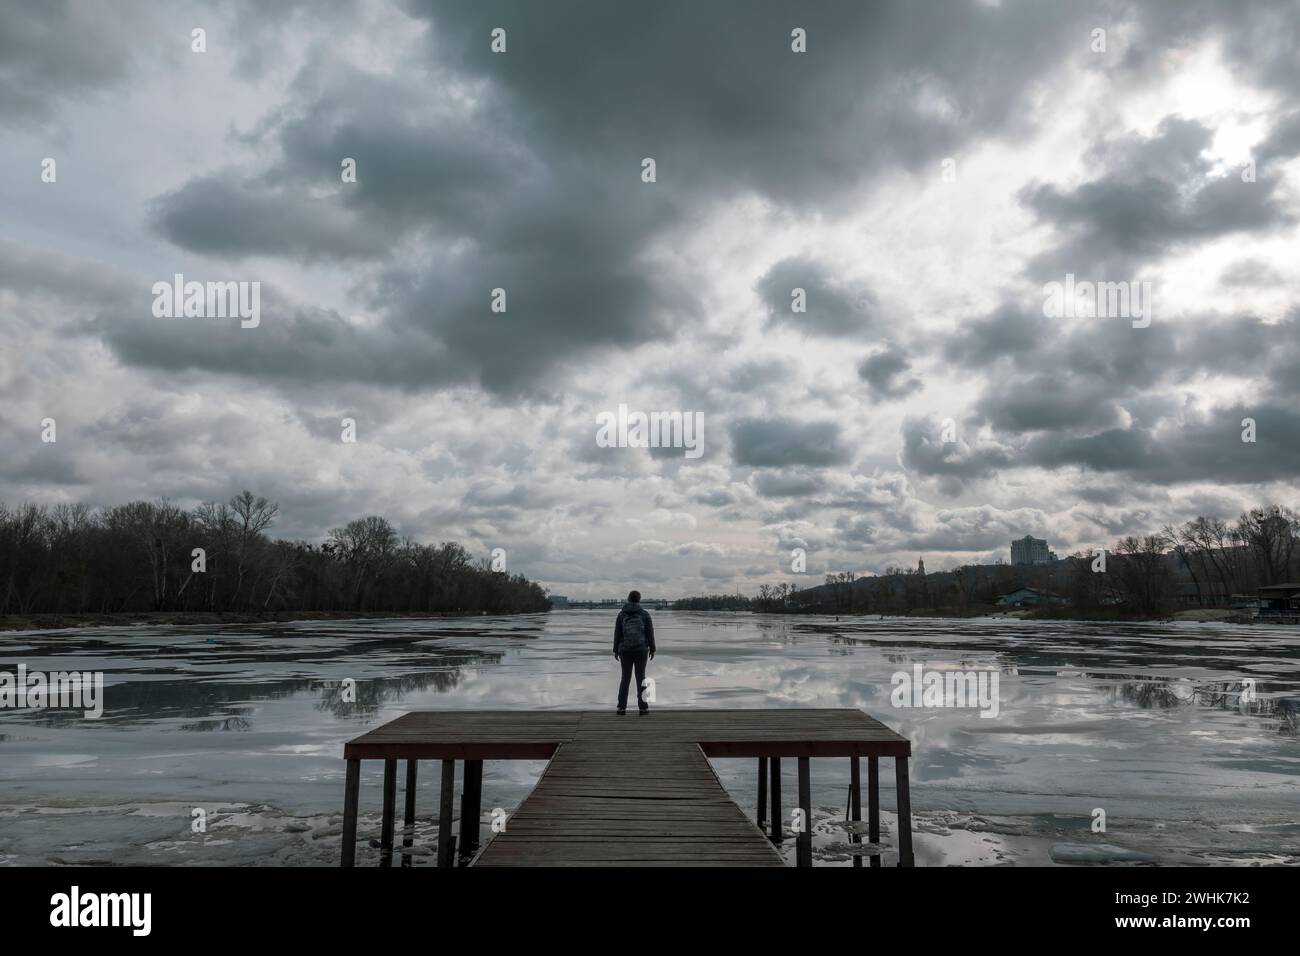 Einsame Frau steht auf dem Holzsteg und sieht Wolkenreflexionen im kalten Wasser. Dramatisches Foto über harte Zeiten, schwierige Lebensentscheidungen und d Stockfoto